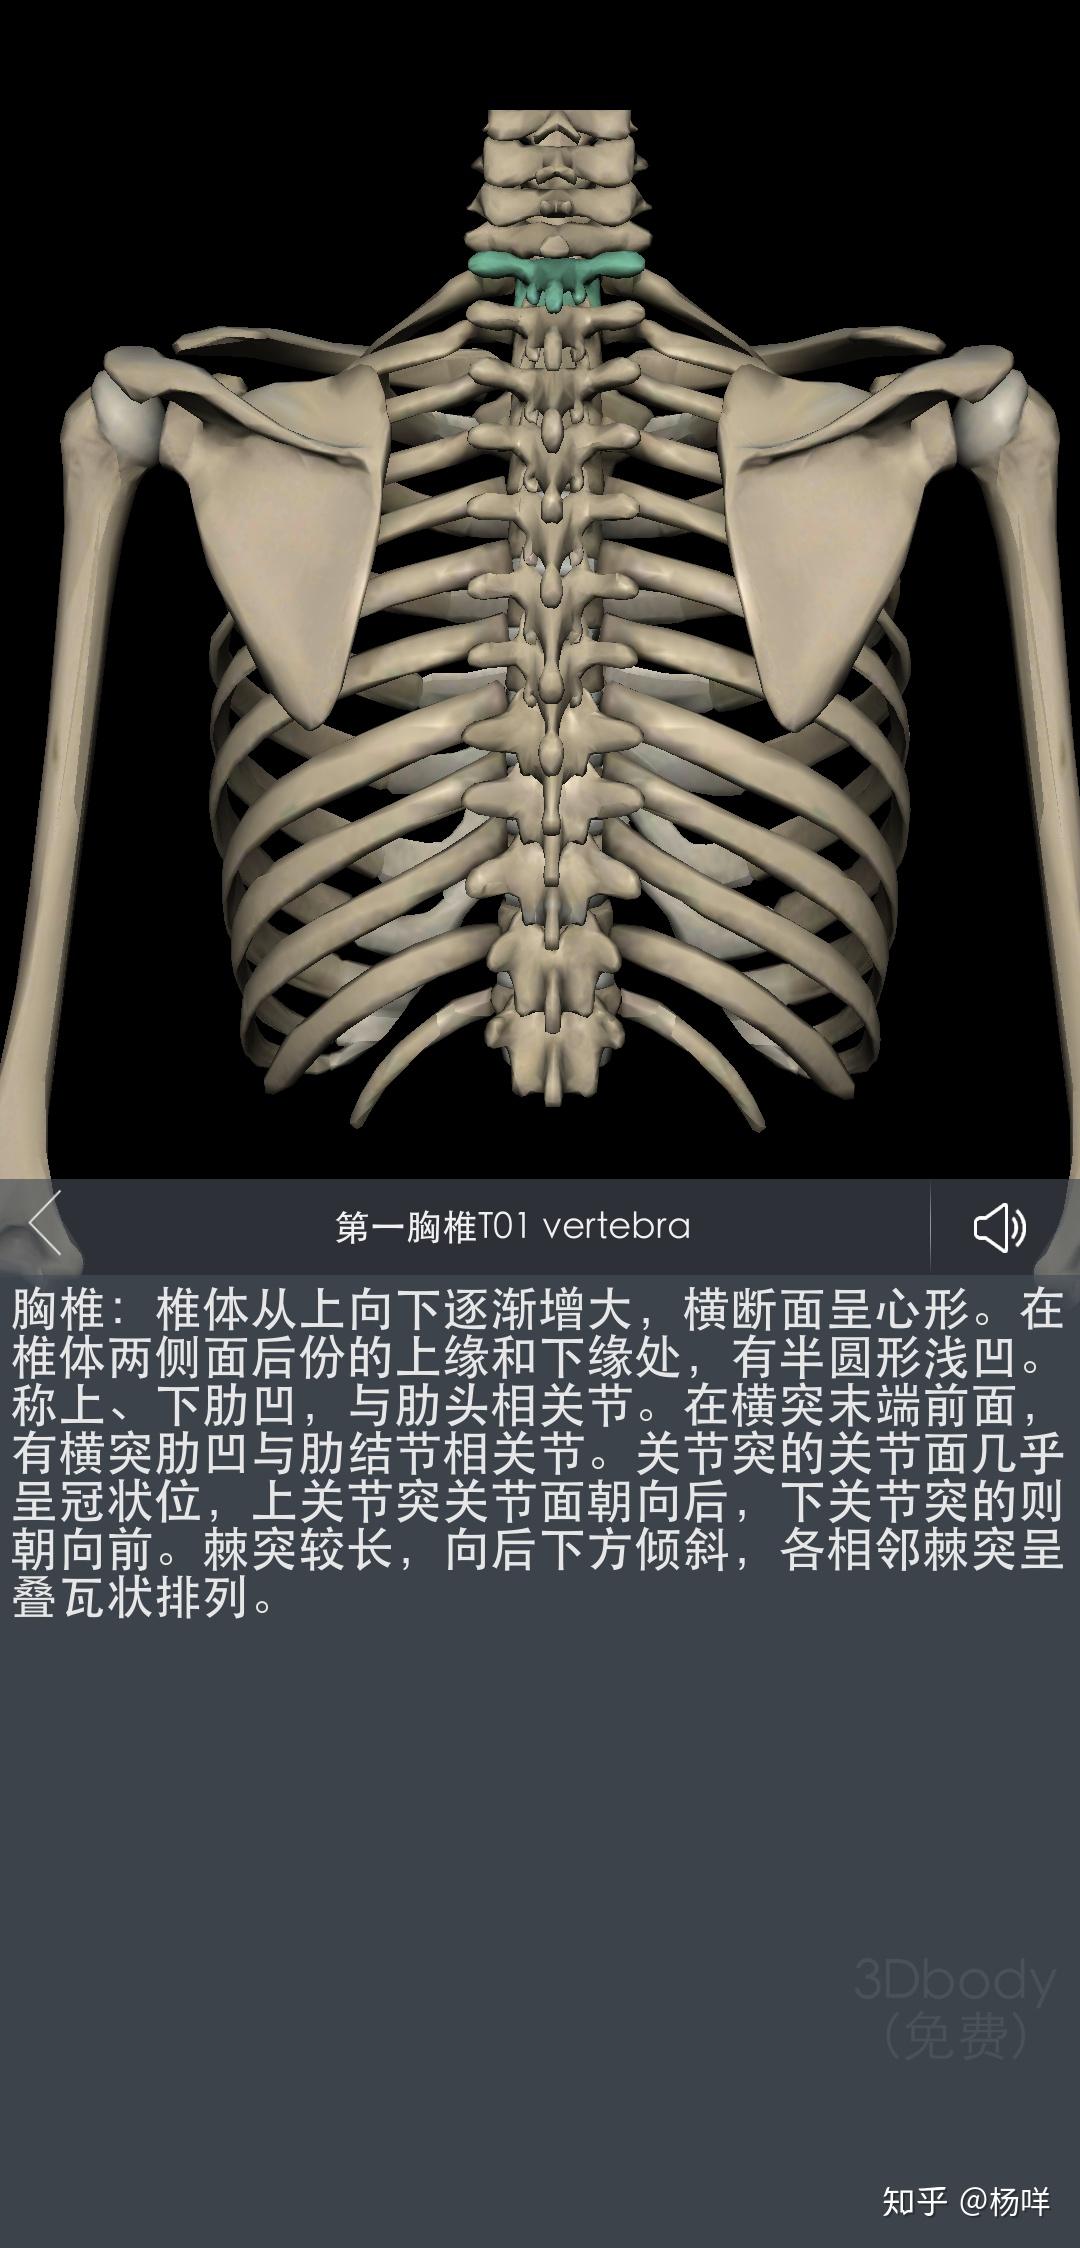 前沿医学-中国筋膜技术脊柱侧弯矫正技术介绍及临床案例影像学及体态分析 - 知乎